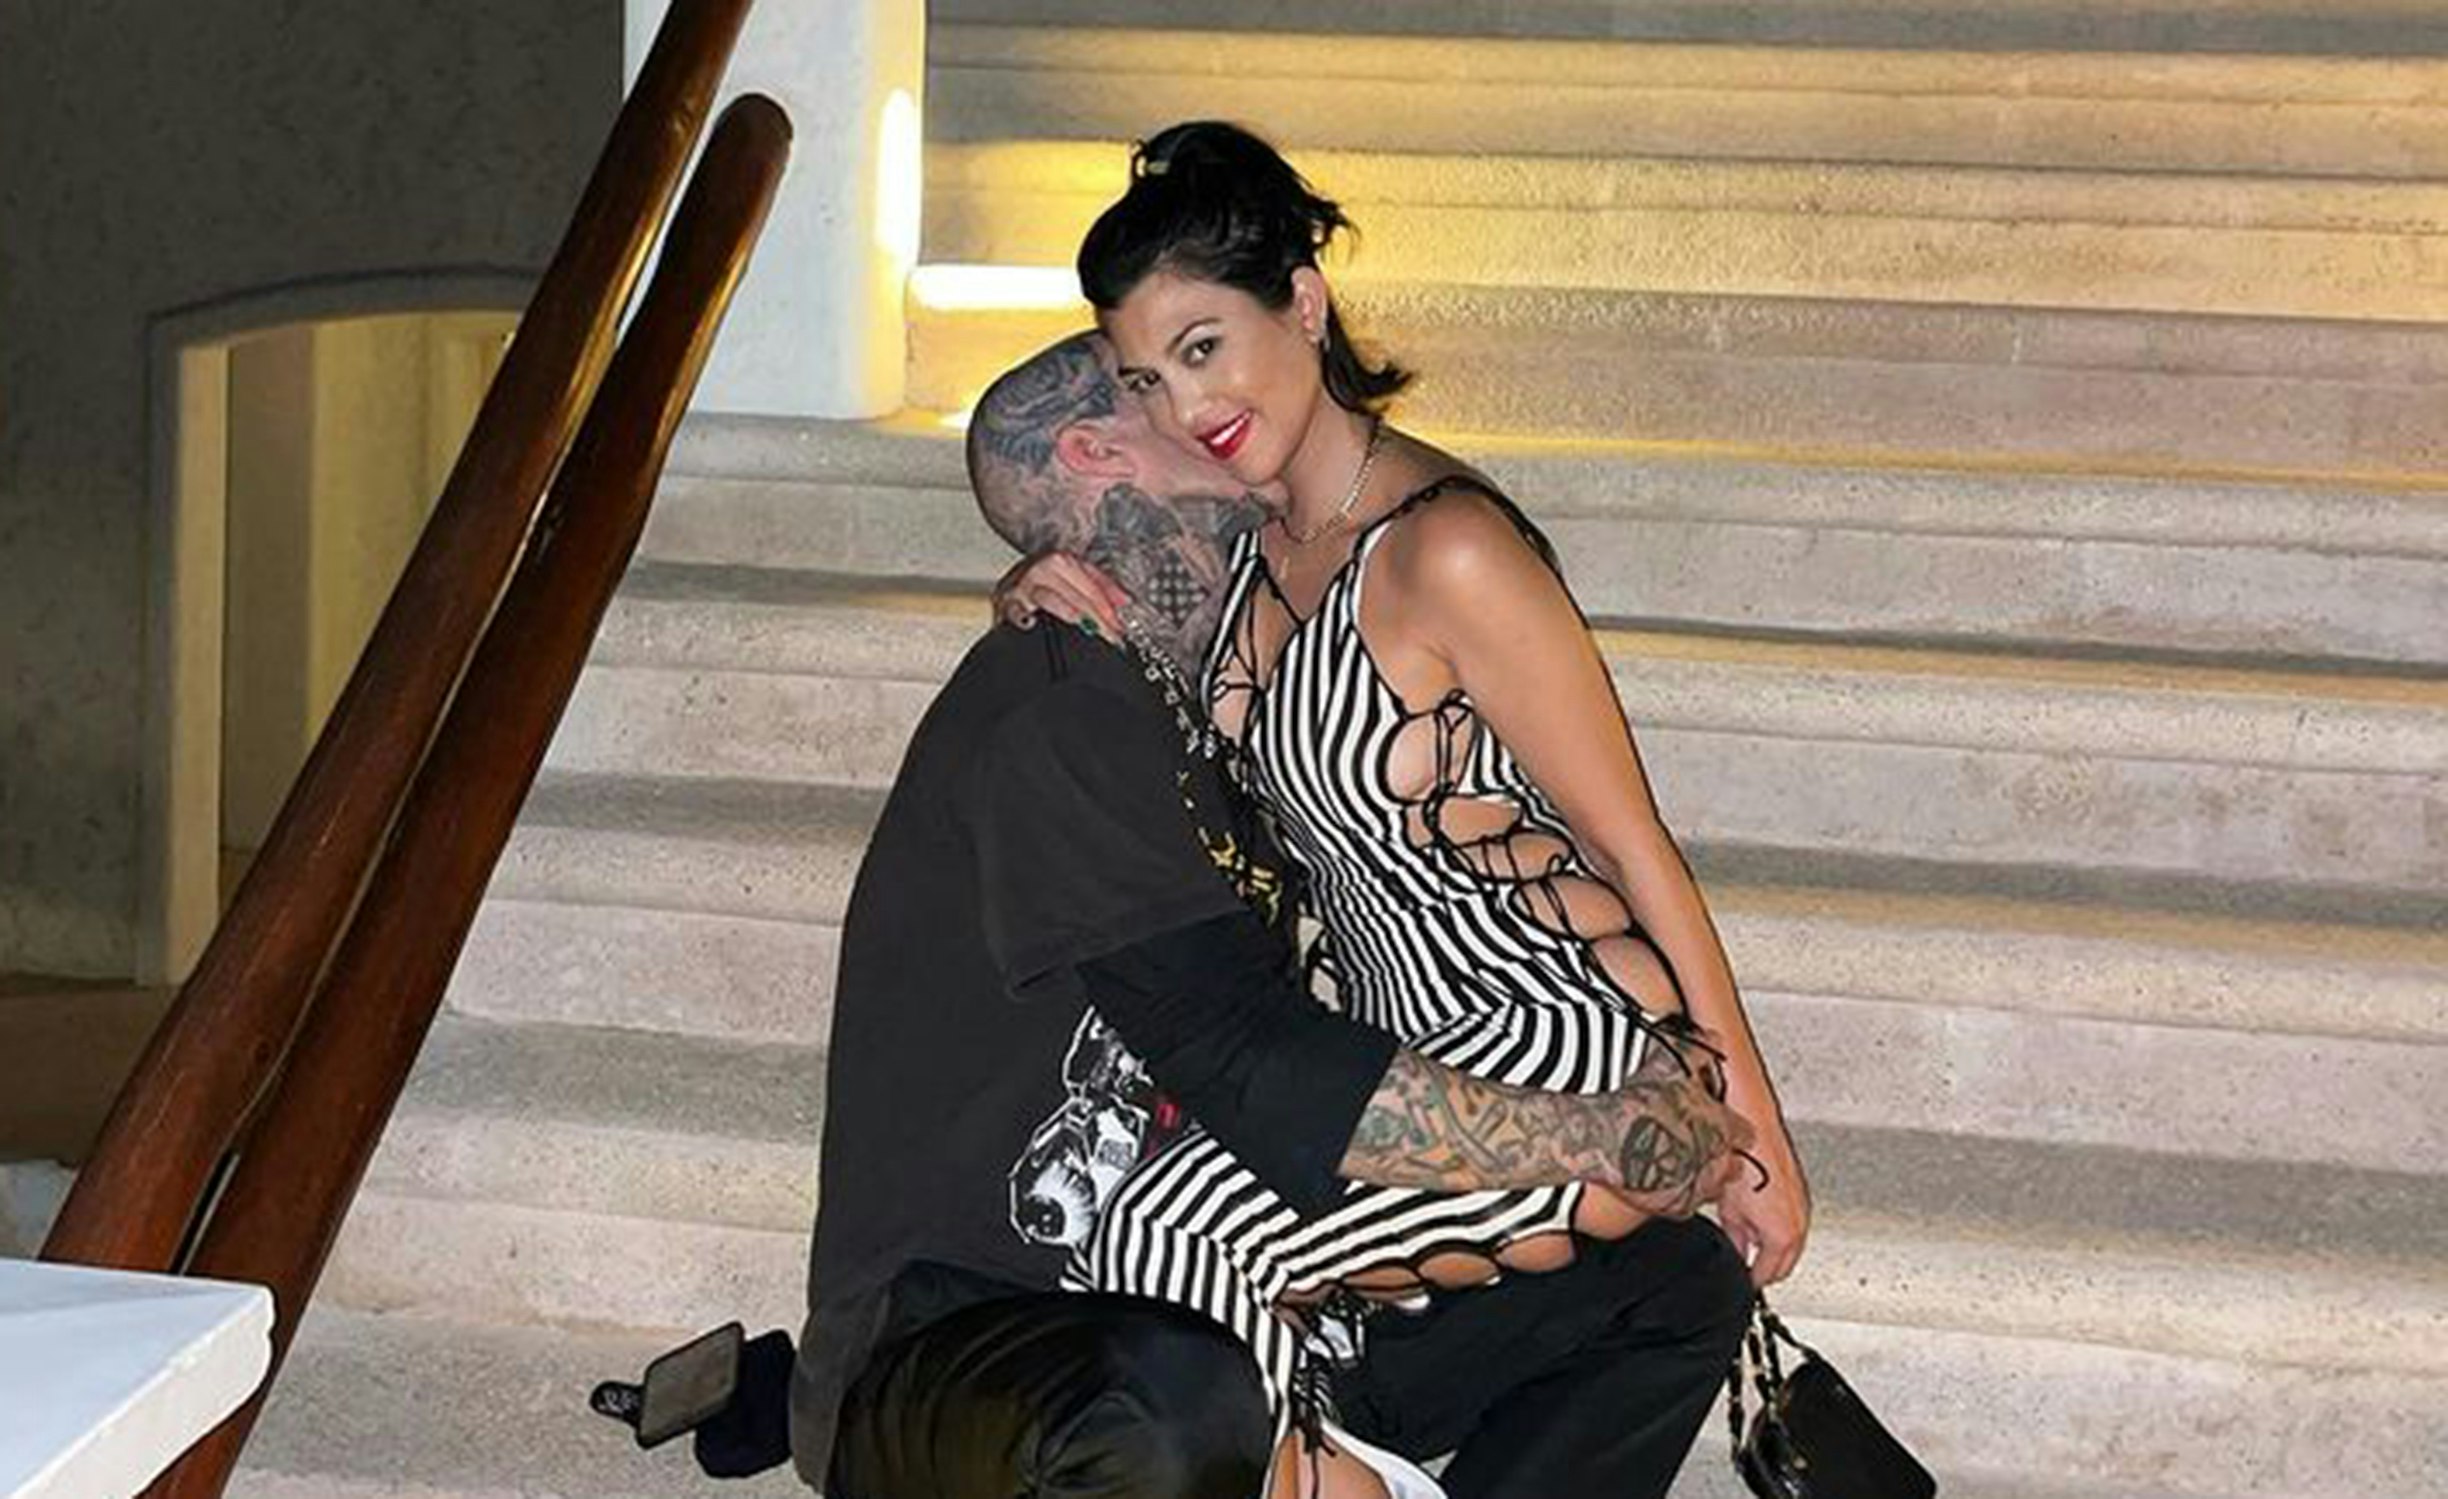 Kourtney Kardashian og Travis Barker på kærestetur i Italien